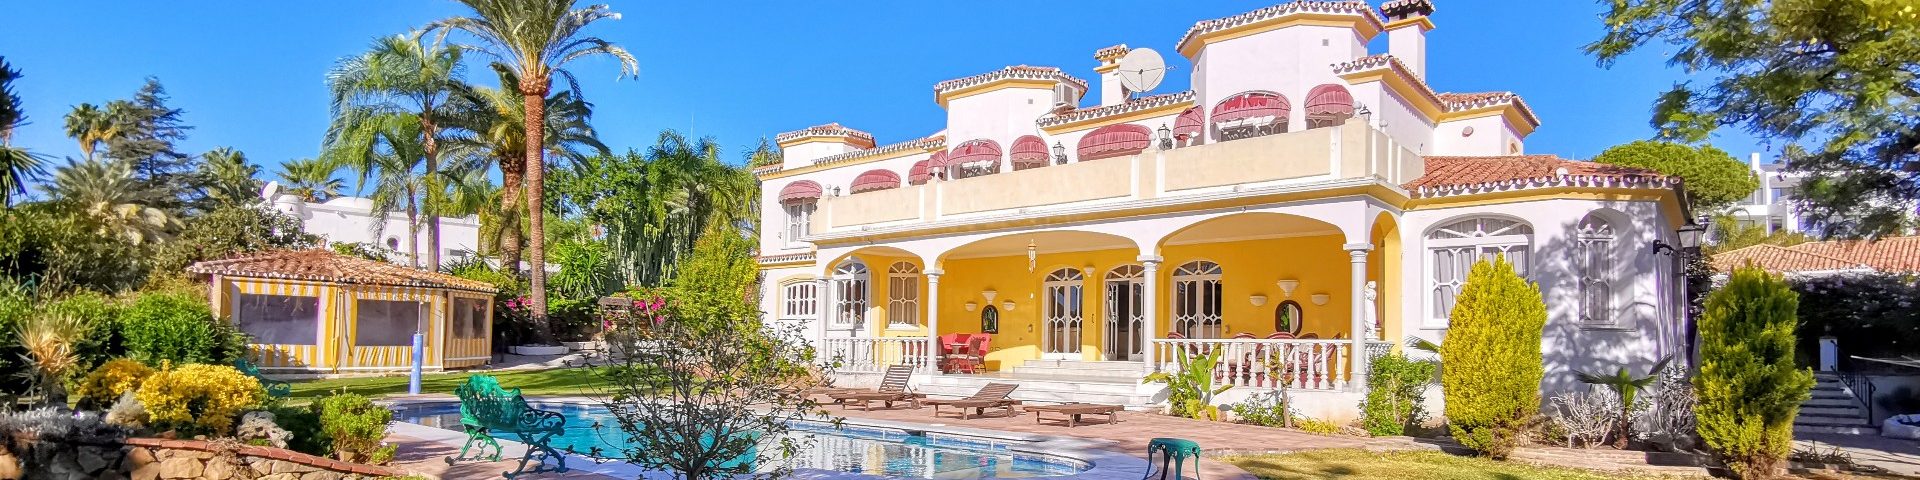 Grand villa with private pool